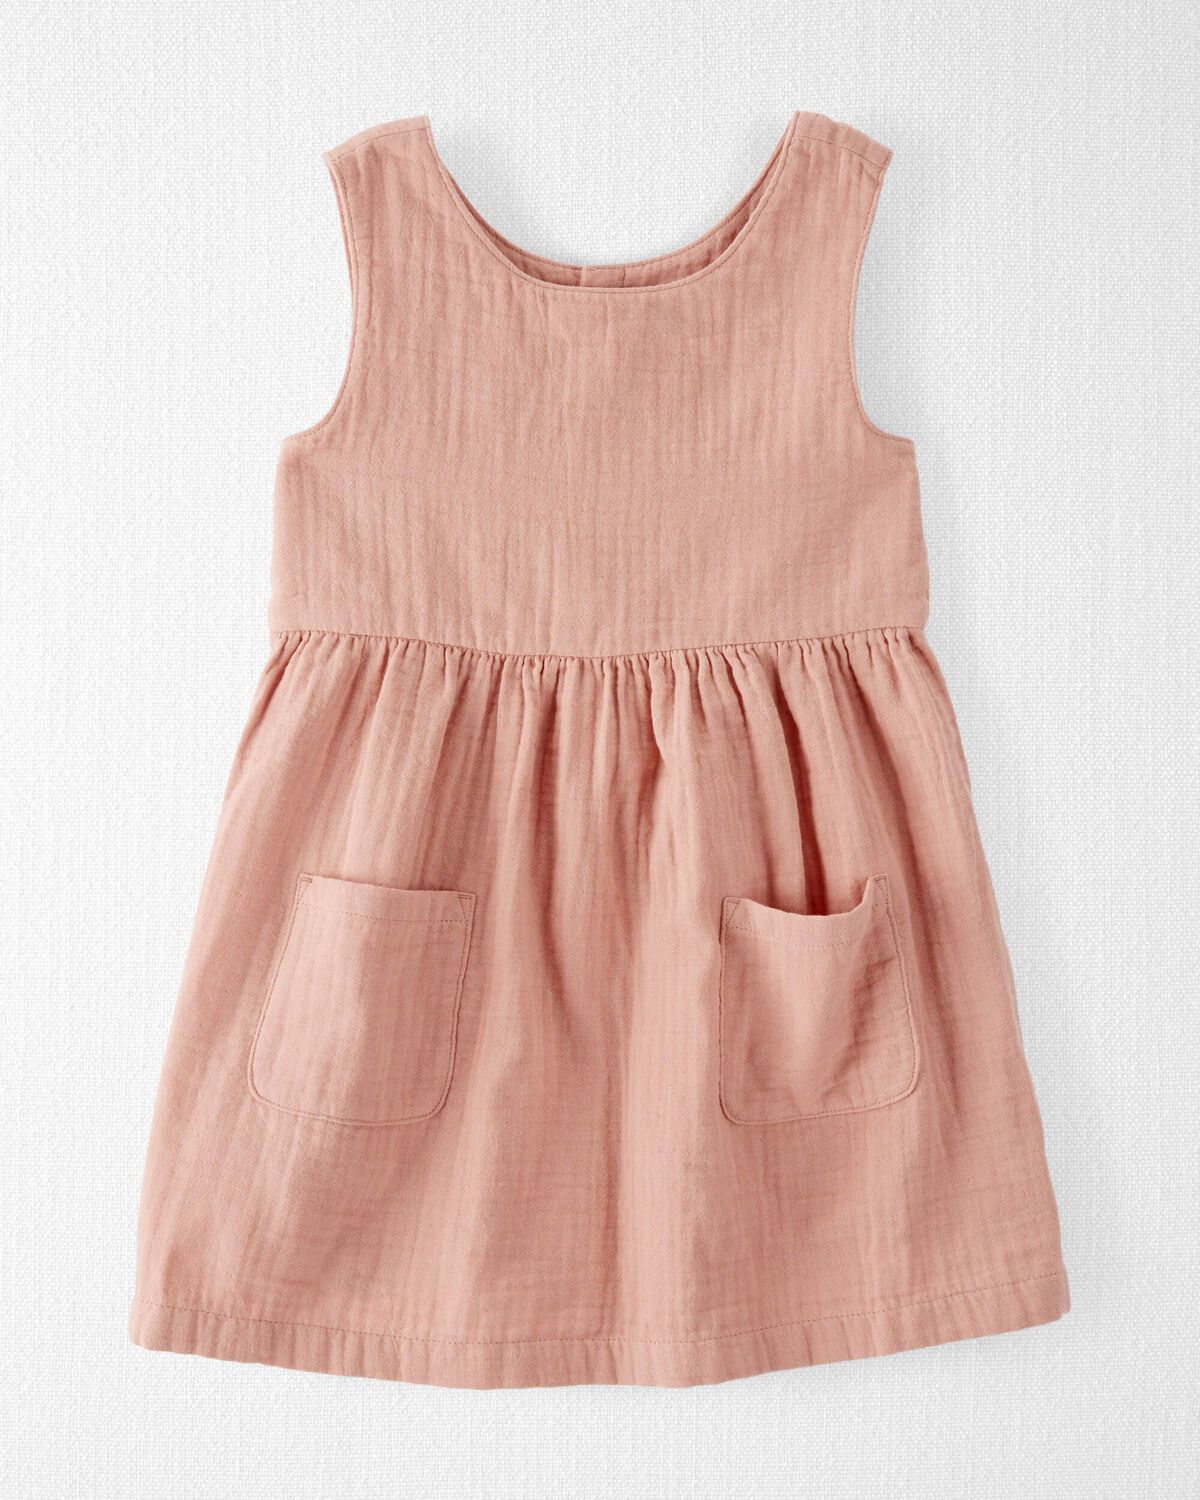 Fossil Tan Toddler Organic Cotton Gauze Pocket Dress
 | carters.com | Carter's